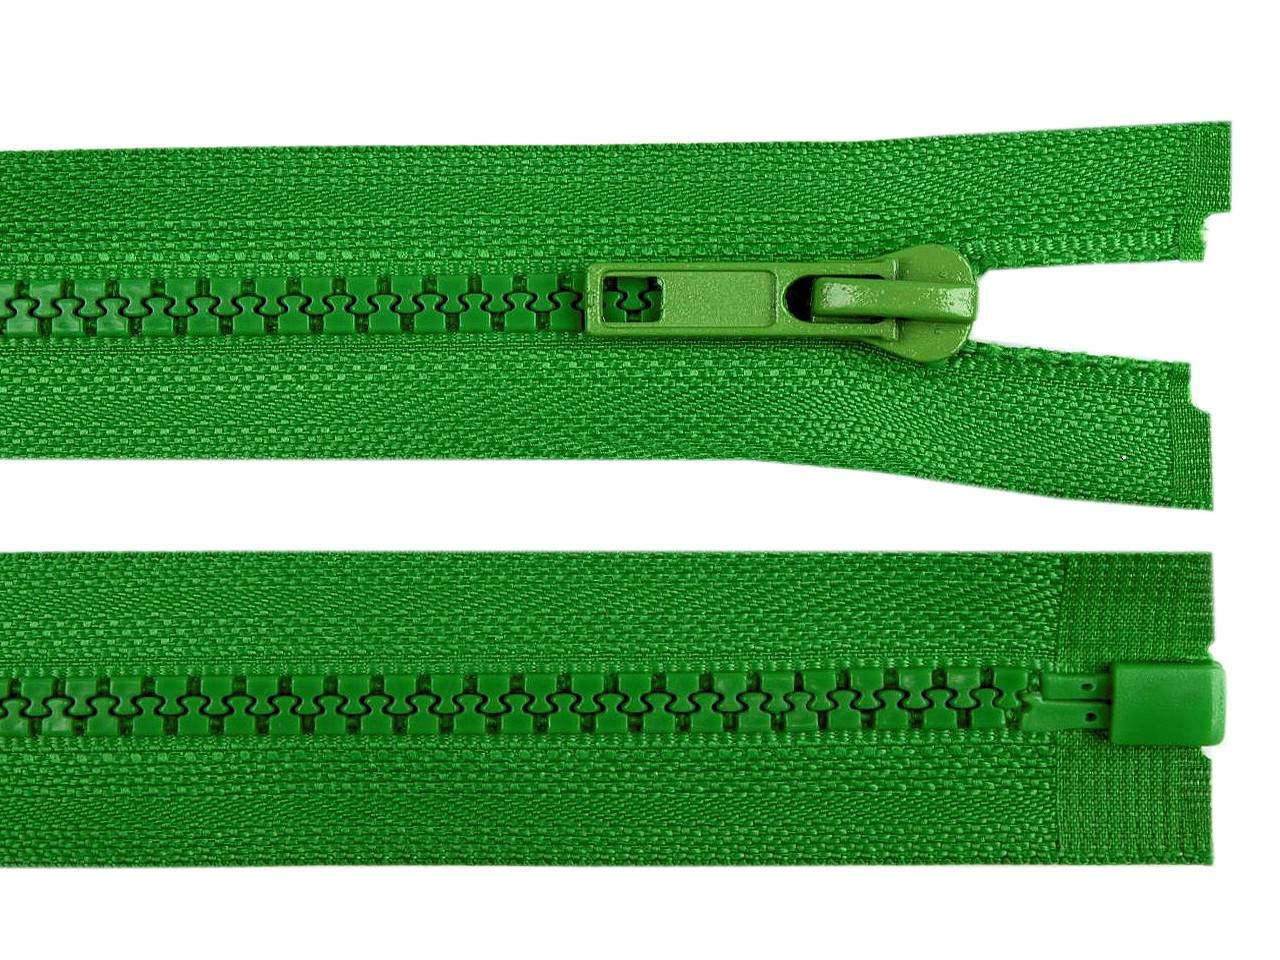 Kostěný zip No 5 délka 75 cm bundový, barva 239 zelená irská